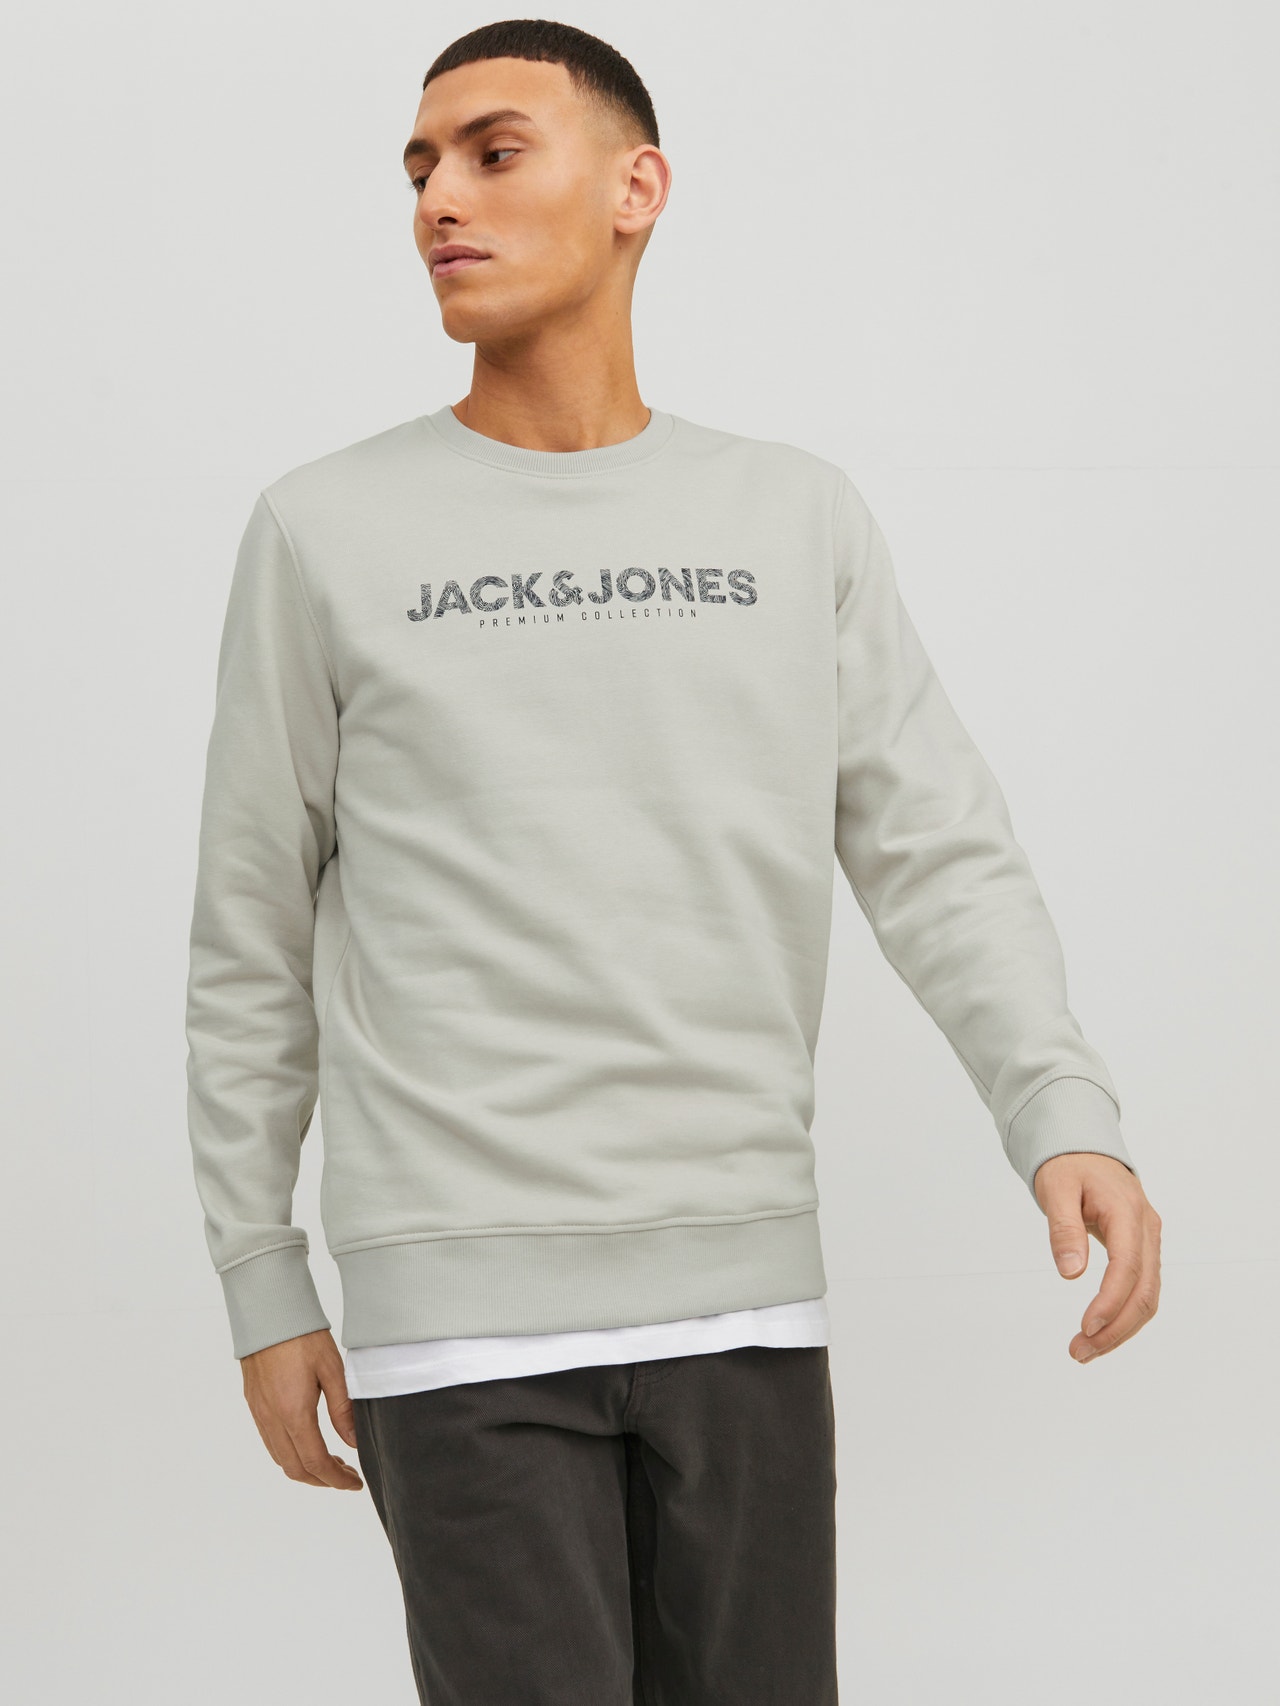 Jack & Jones Logo Crew neck Sweatshirt -Moonstruck - 12234770